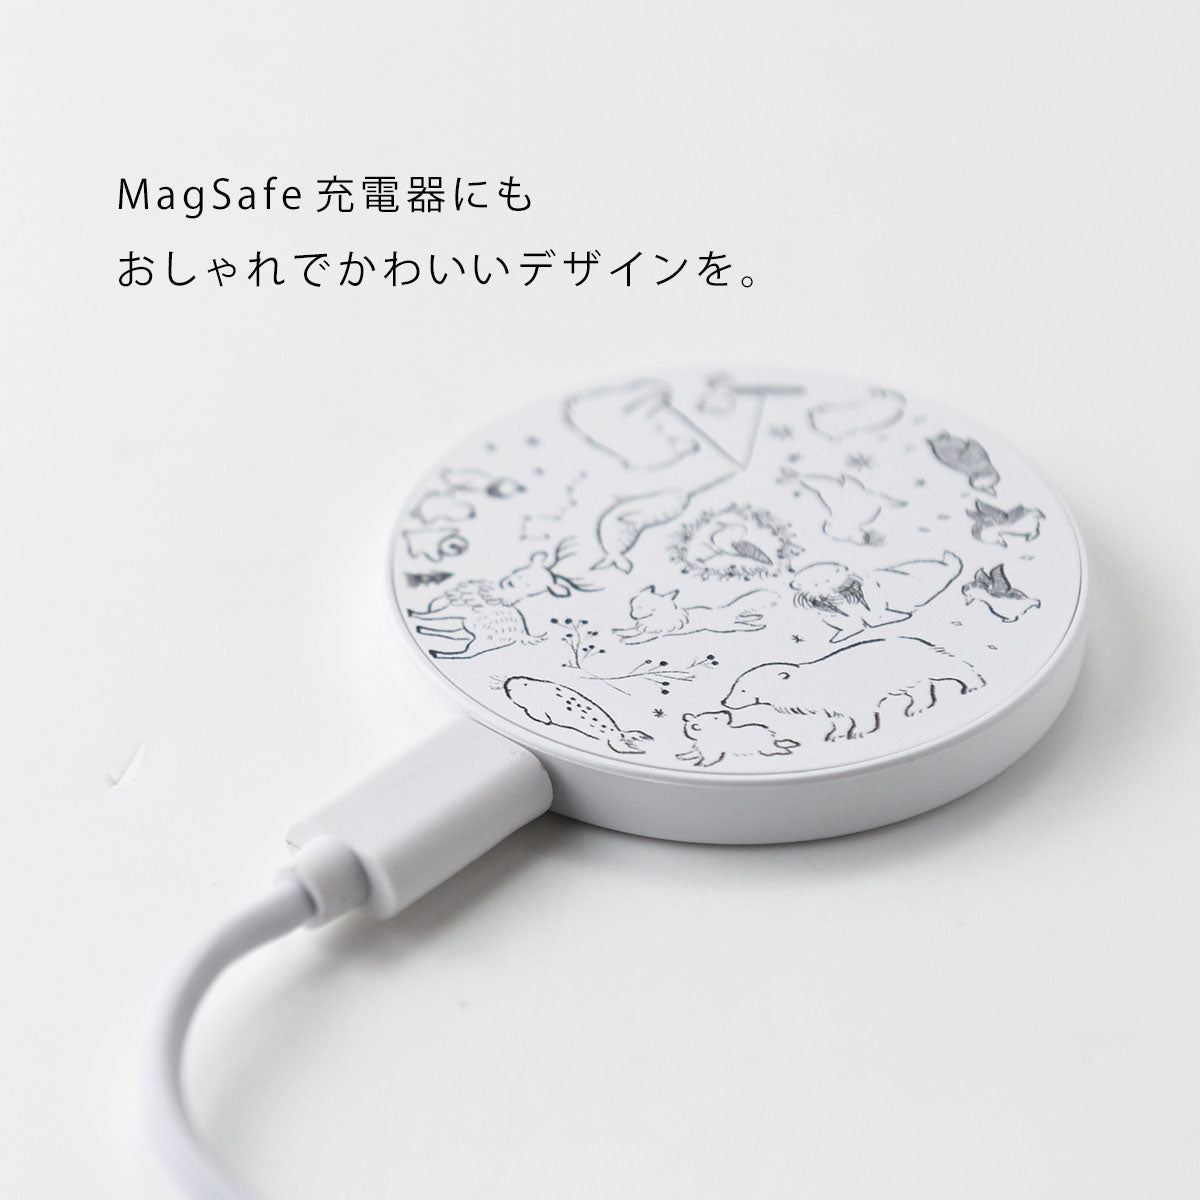 MagSafe 充電器 マグセーフ充電器 iPhone13 iPhone12 qi 充電器 おしゃれ かわいい 秋